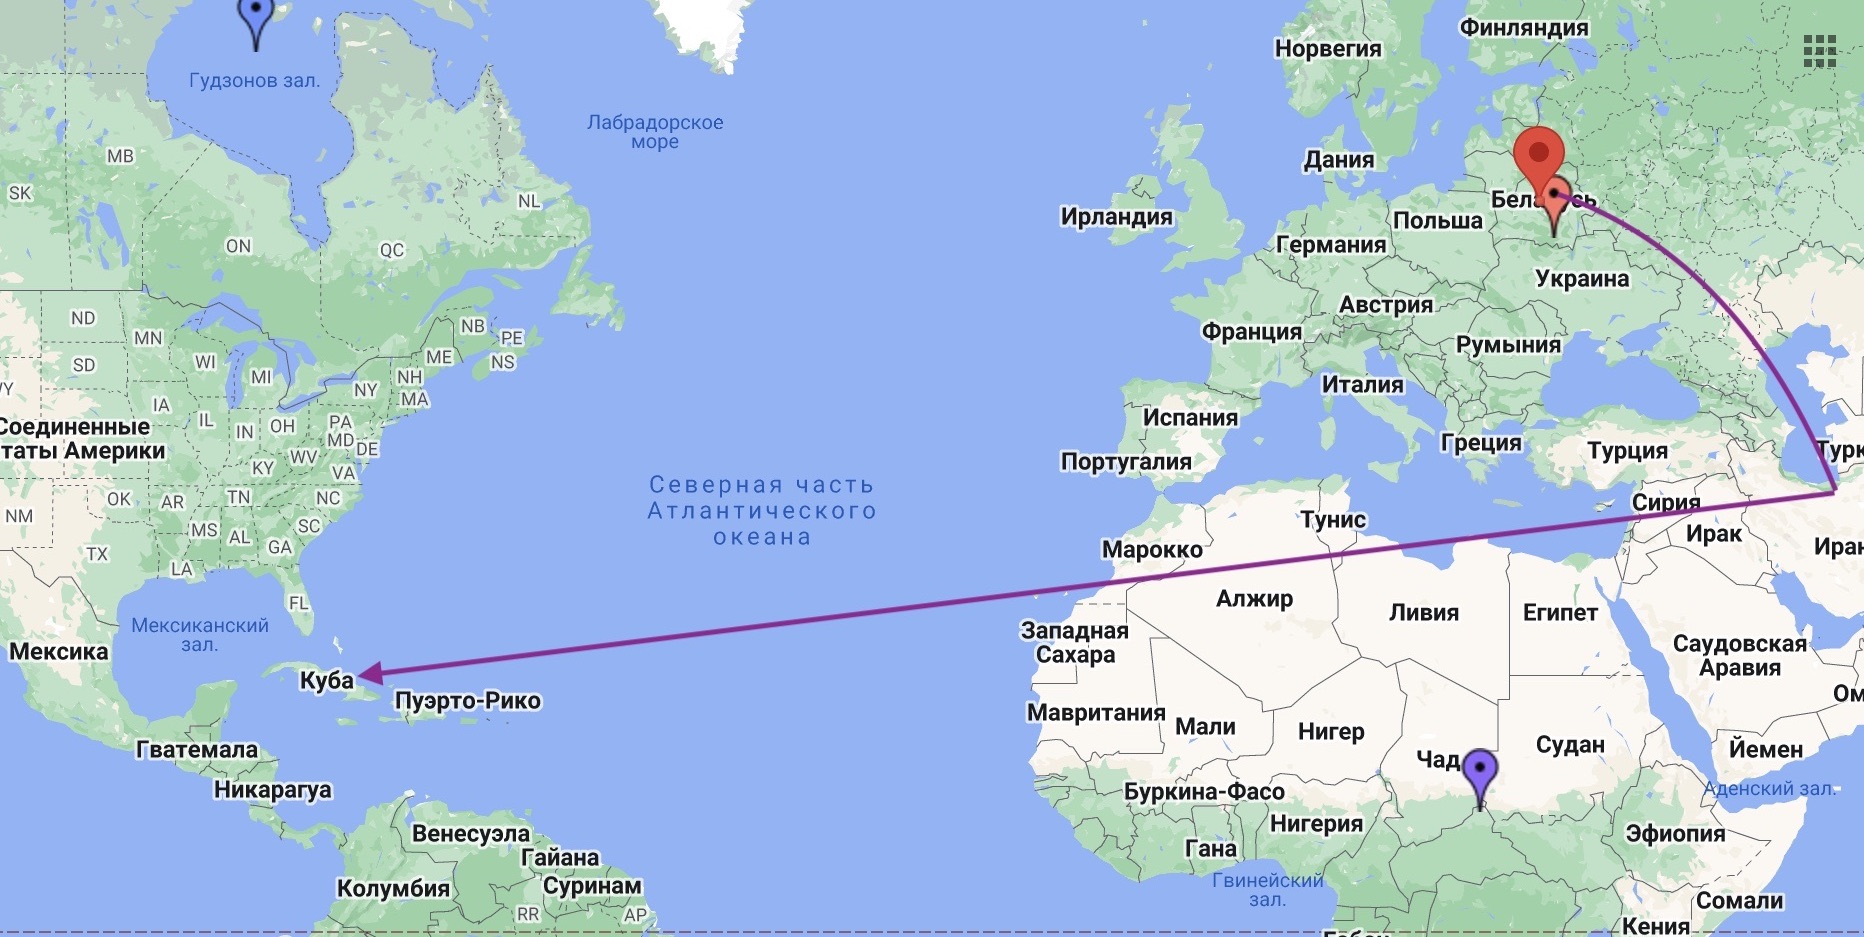 Примерная схема маршрута венесульэльской авиакомпании из Минска на Кубу транзитом через Тегеран. Фото: BGMedia.